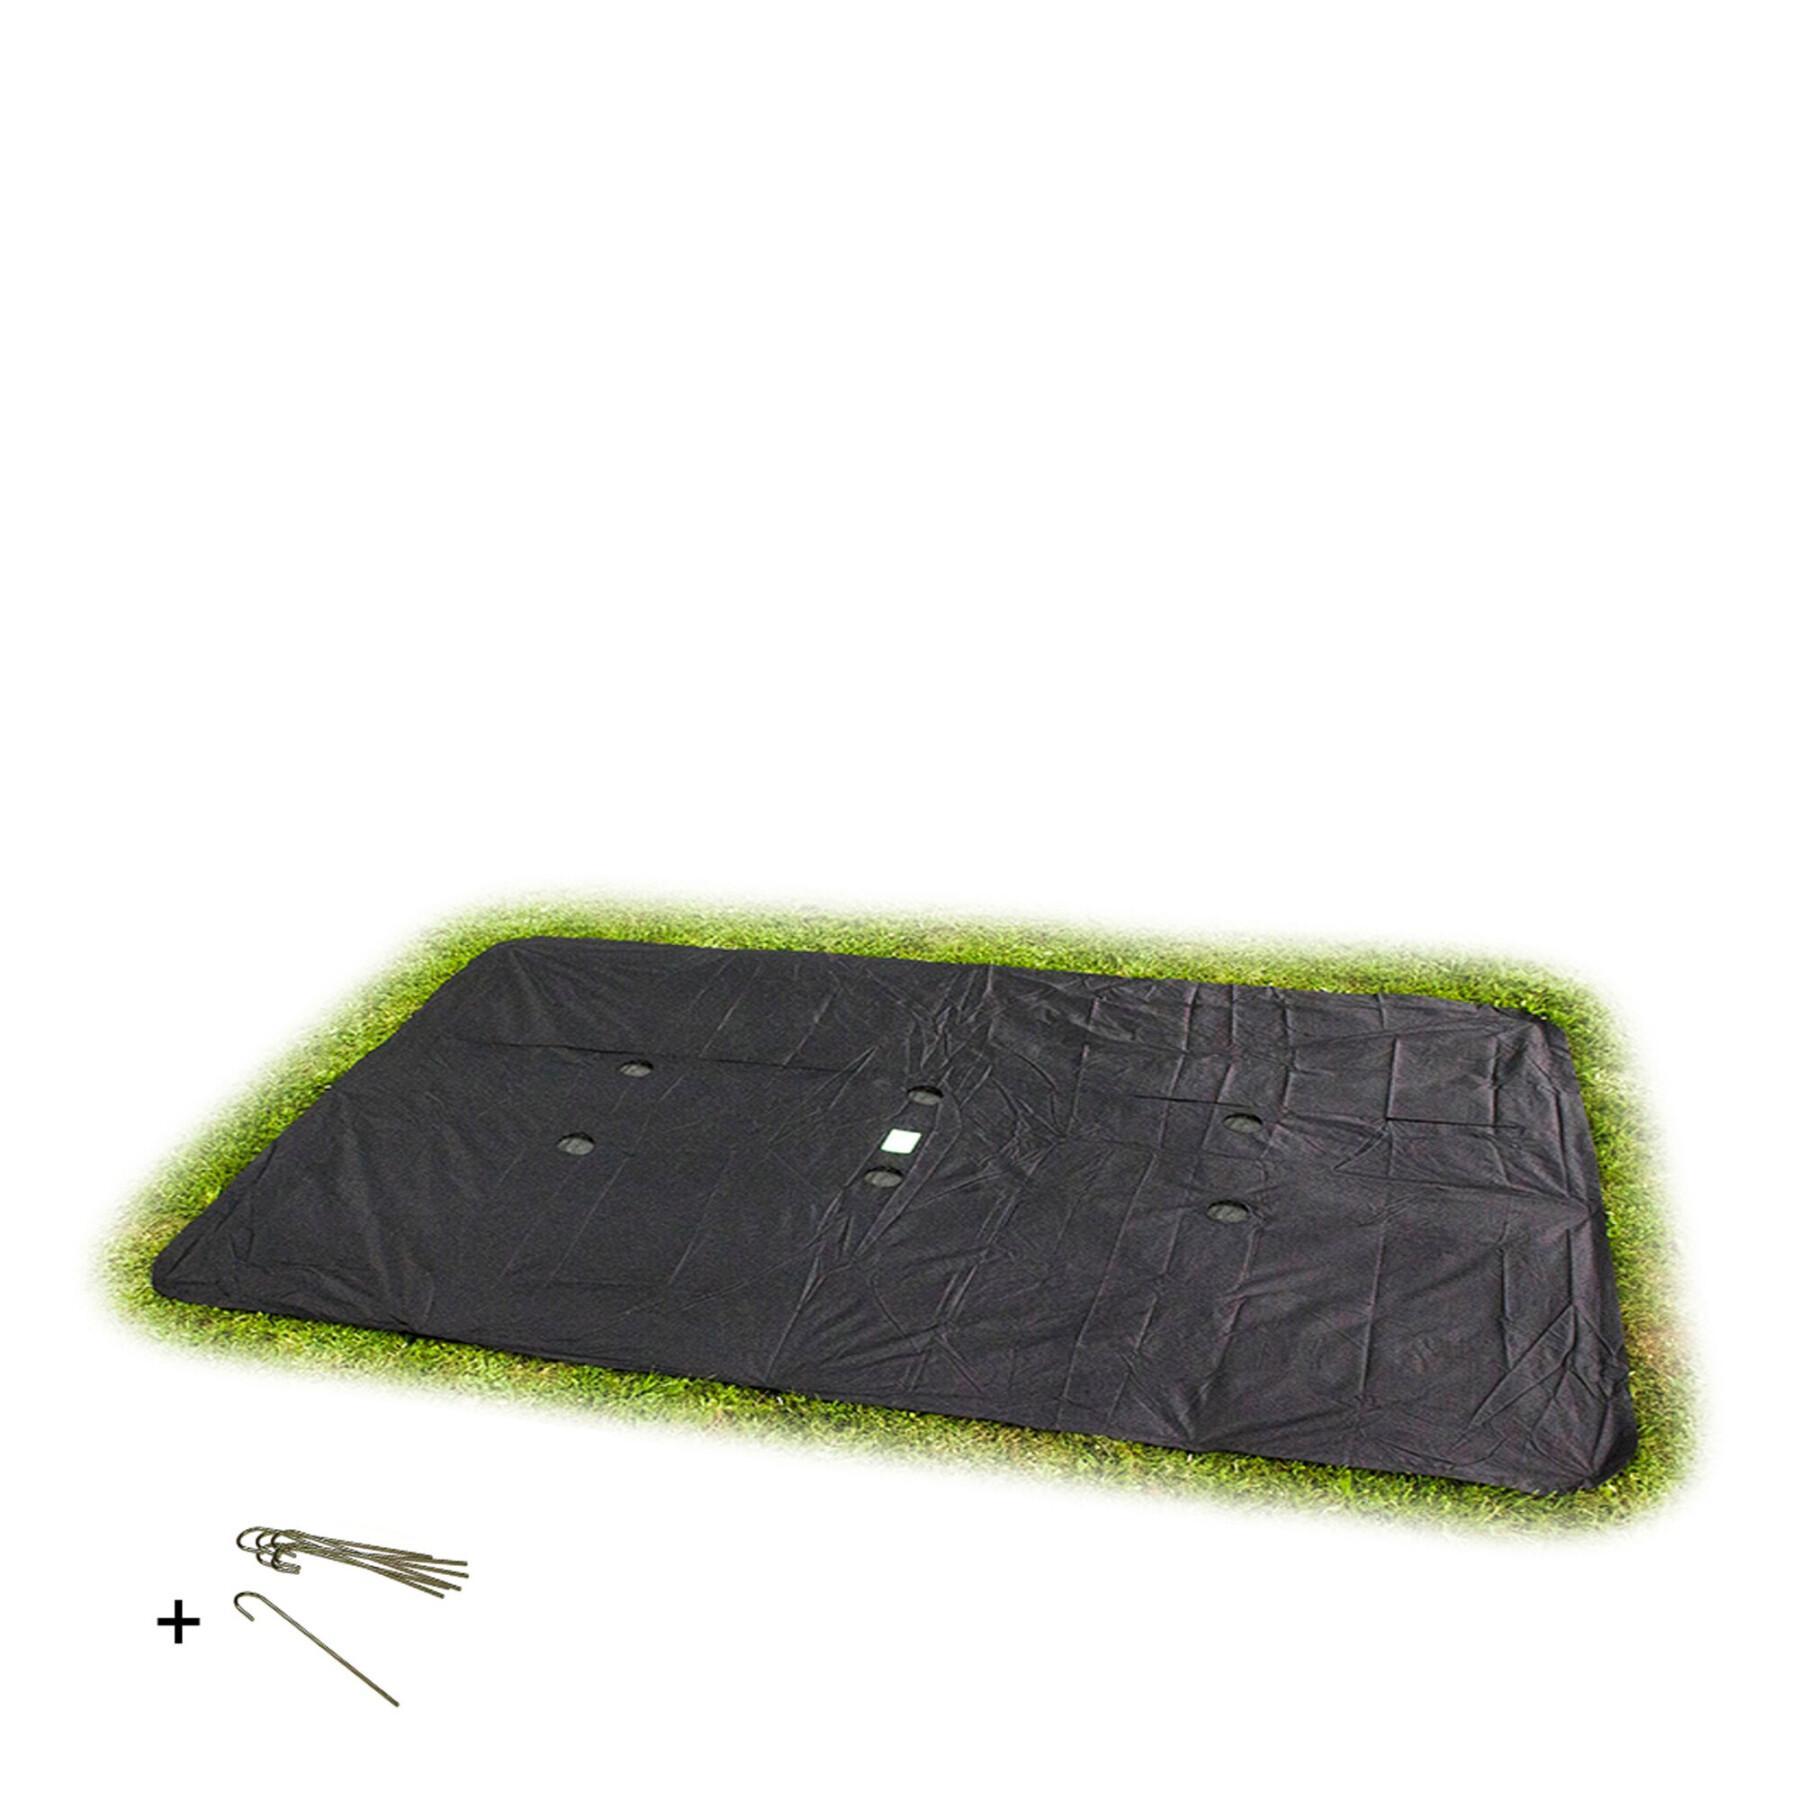 Prostokątna osłona ochronna do trampoliny w poziomie gruntu Exit Toys 244 x 427 cm